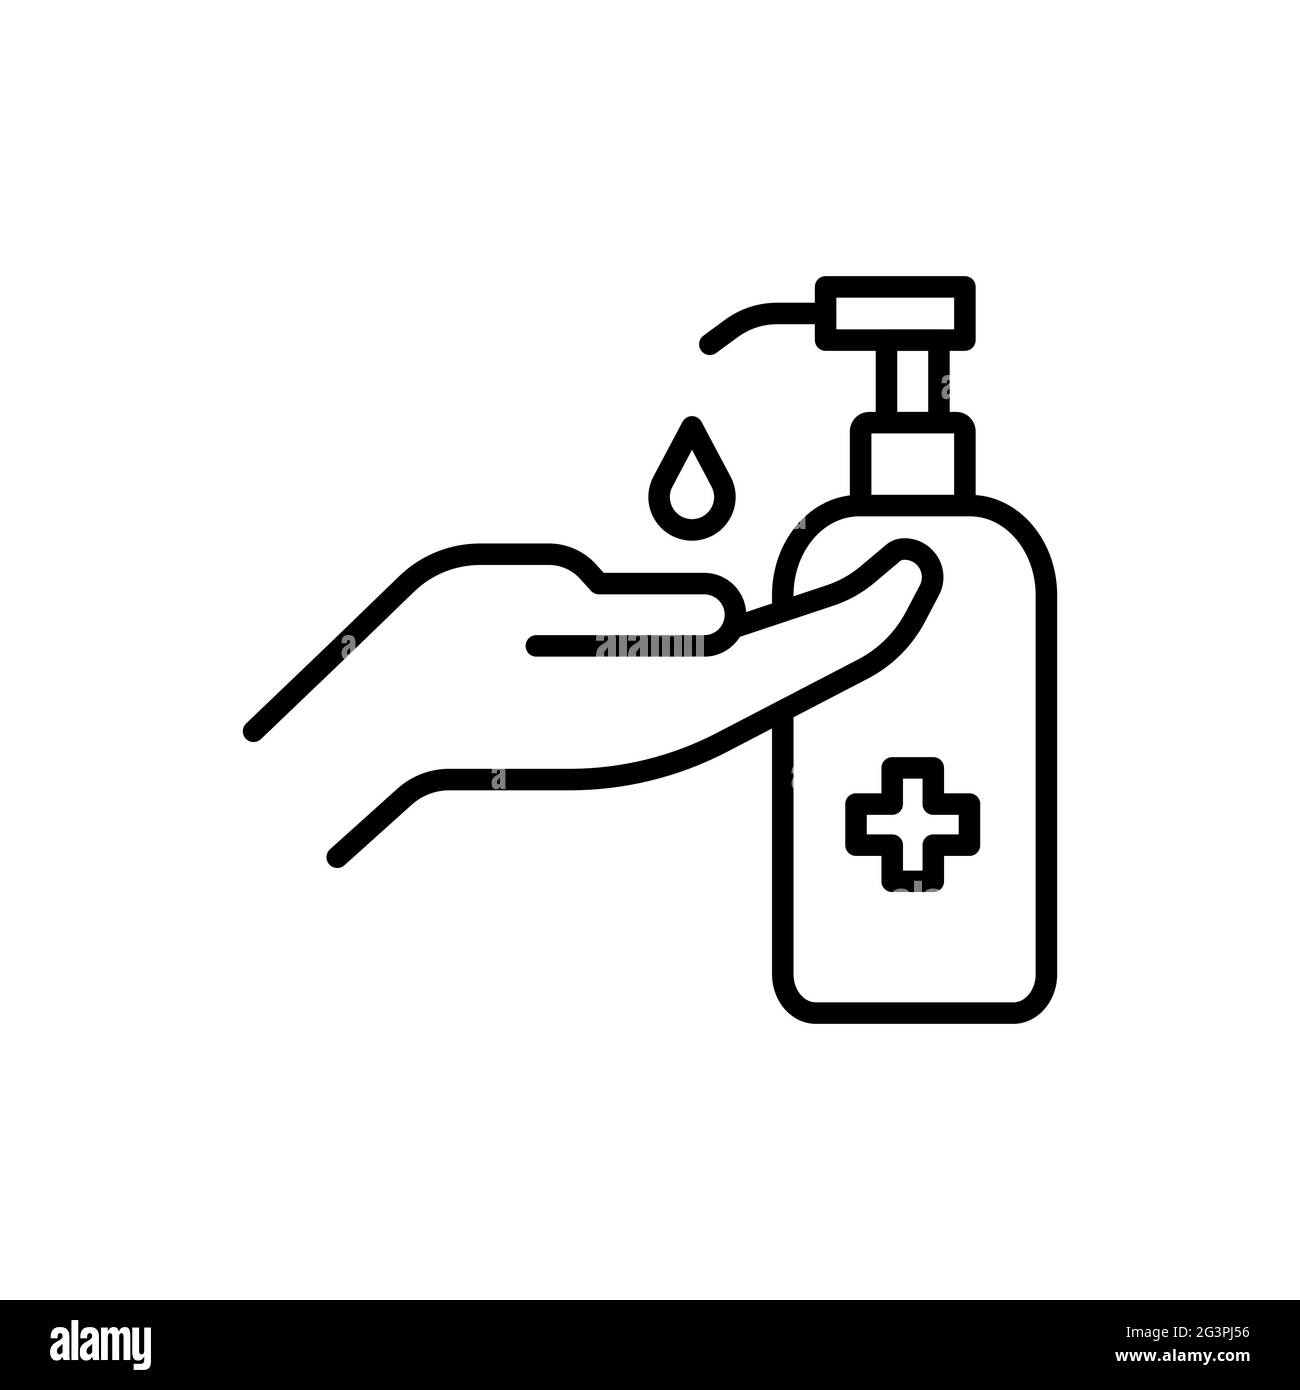 désinfectant pour les mains, vecteur d'icône, pour nettoyer les germes, les bactéries, et empêcher la transmission du virus corona dans les mains Illustration de Vecteur